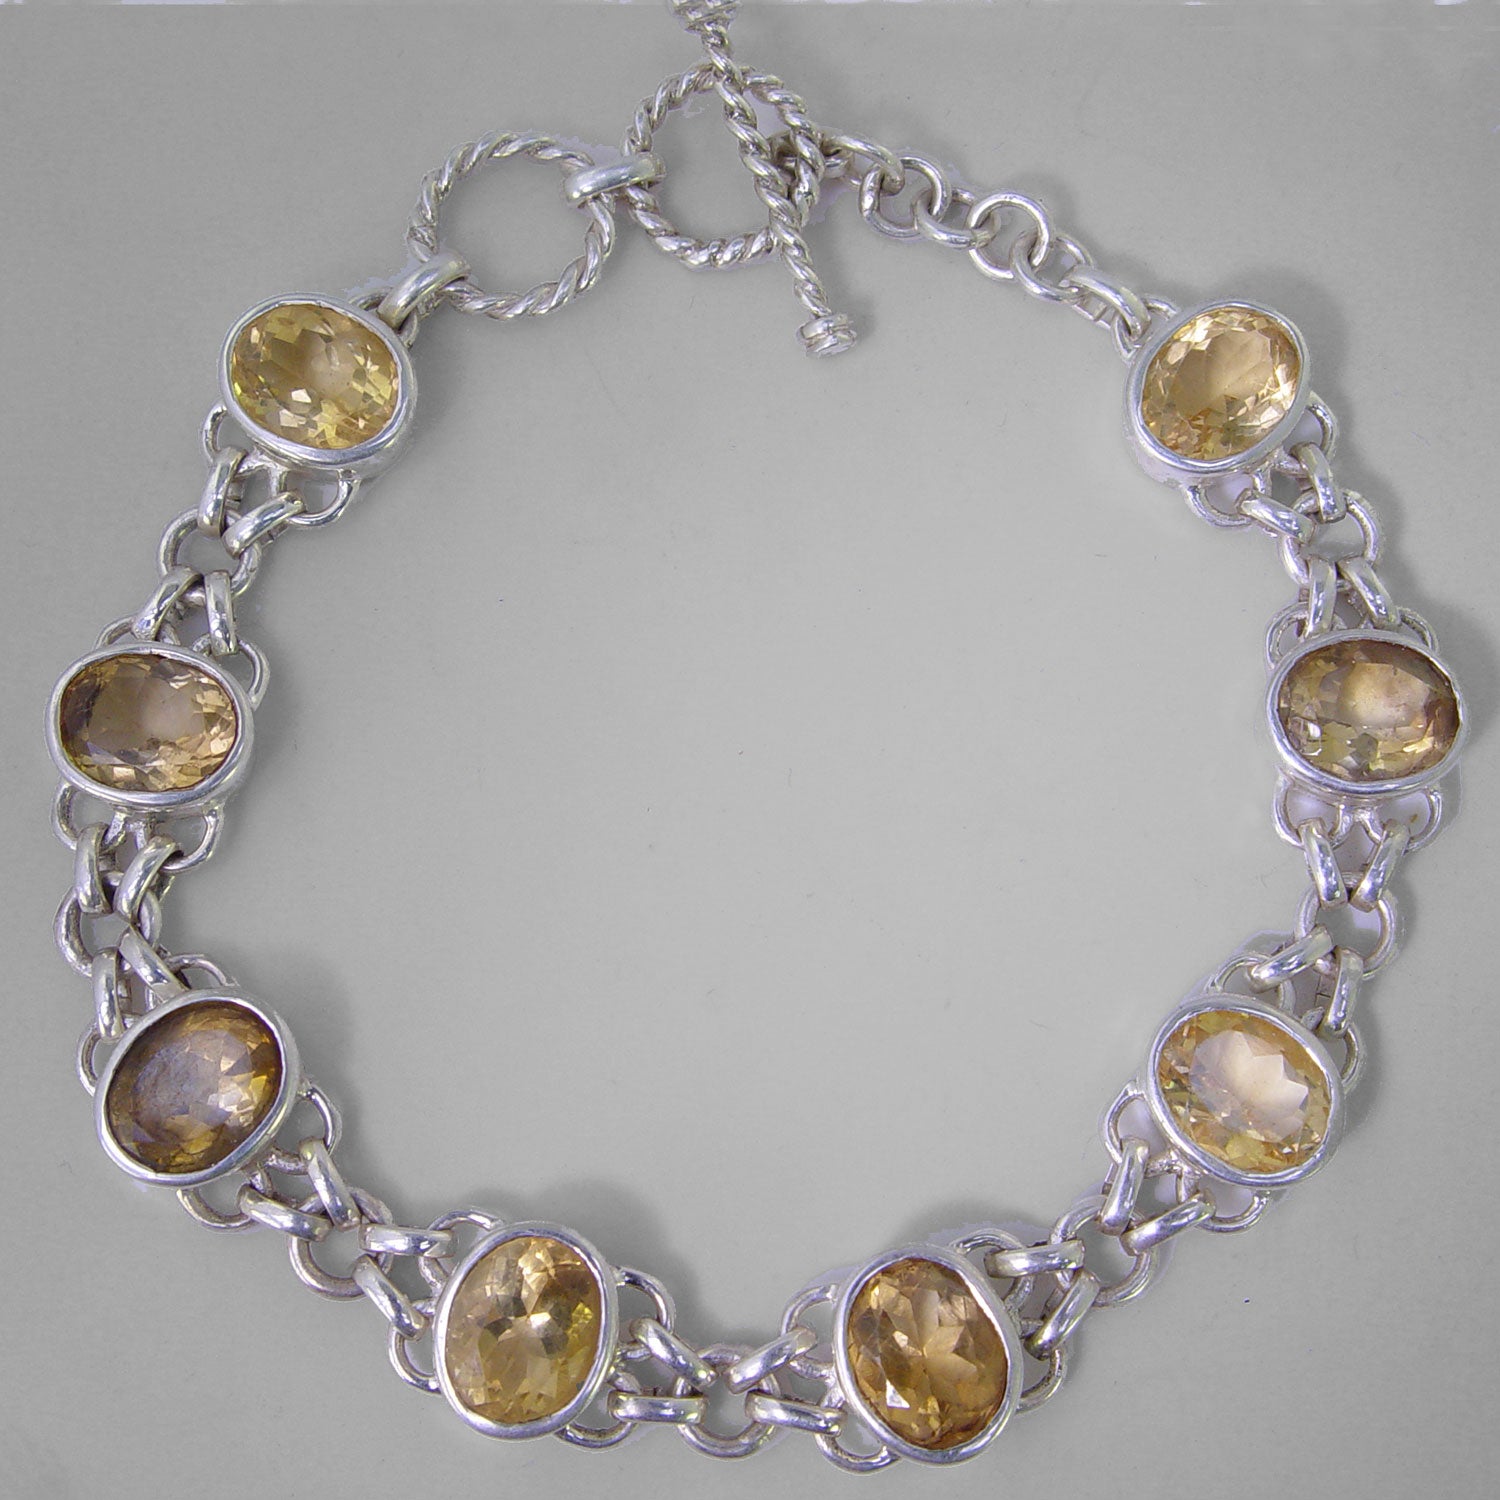 jyotish jewelry for jupiter